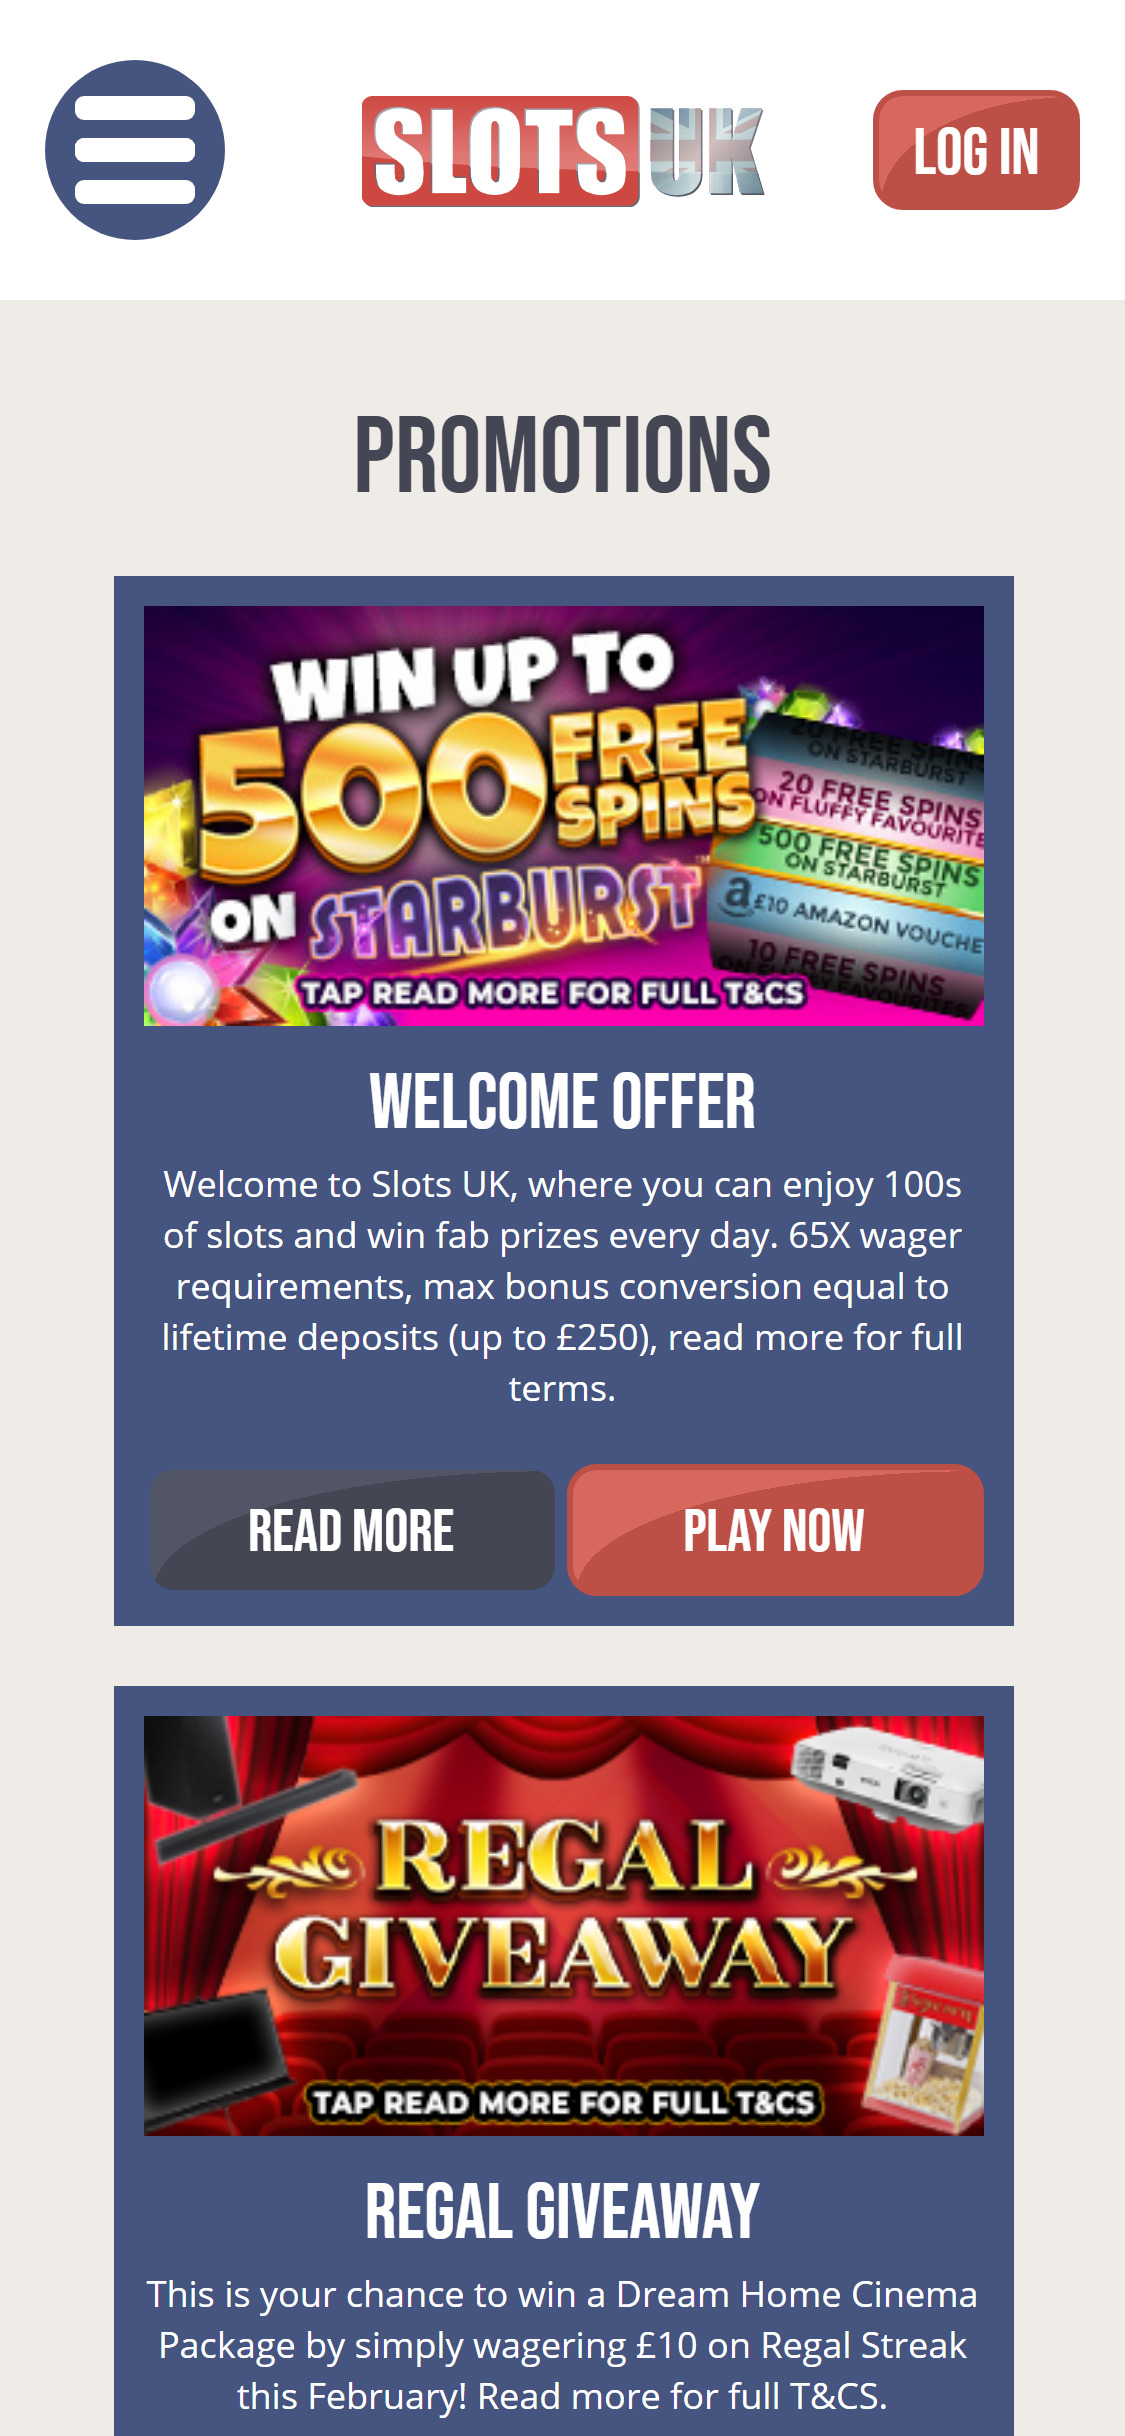 Slots UK Casino Mobile No Deposit Bonus Review